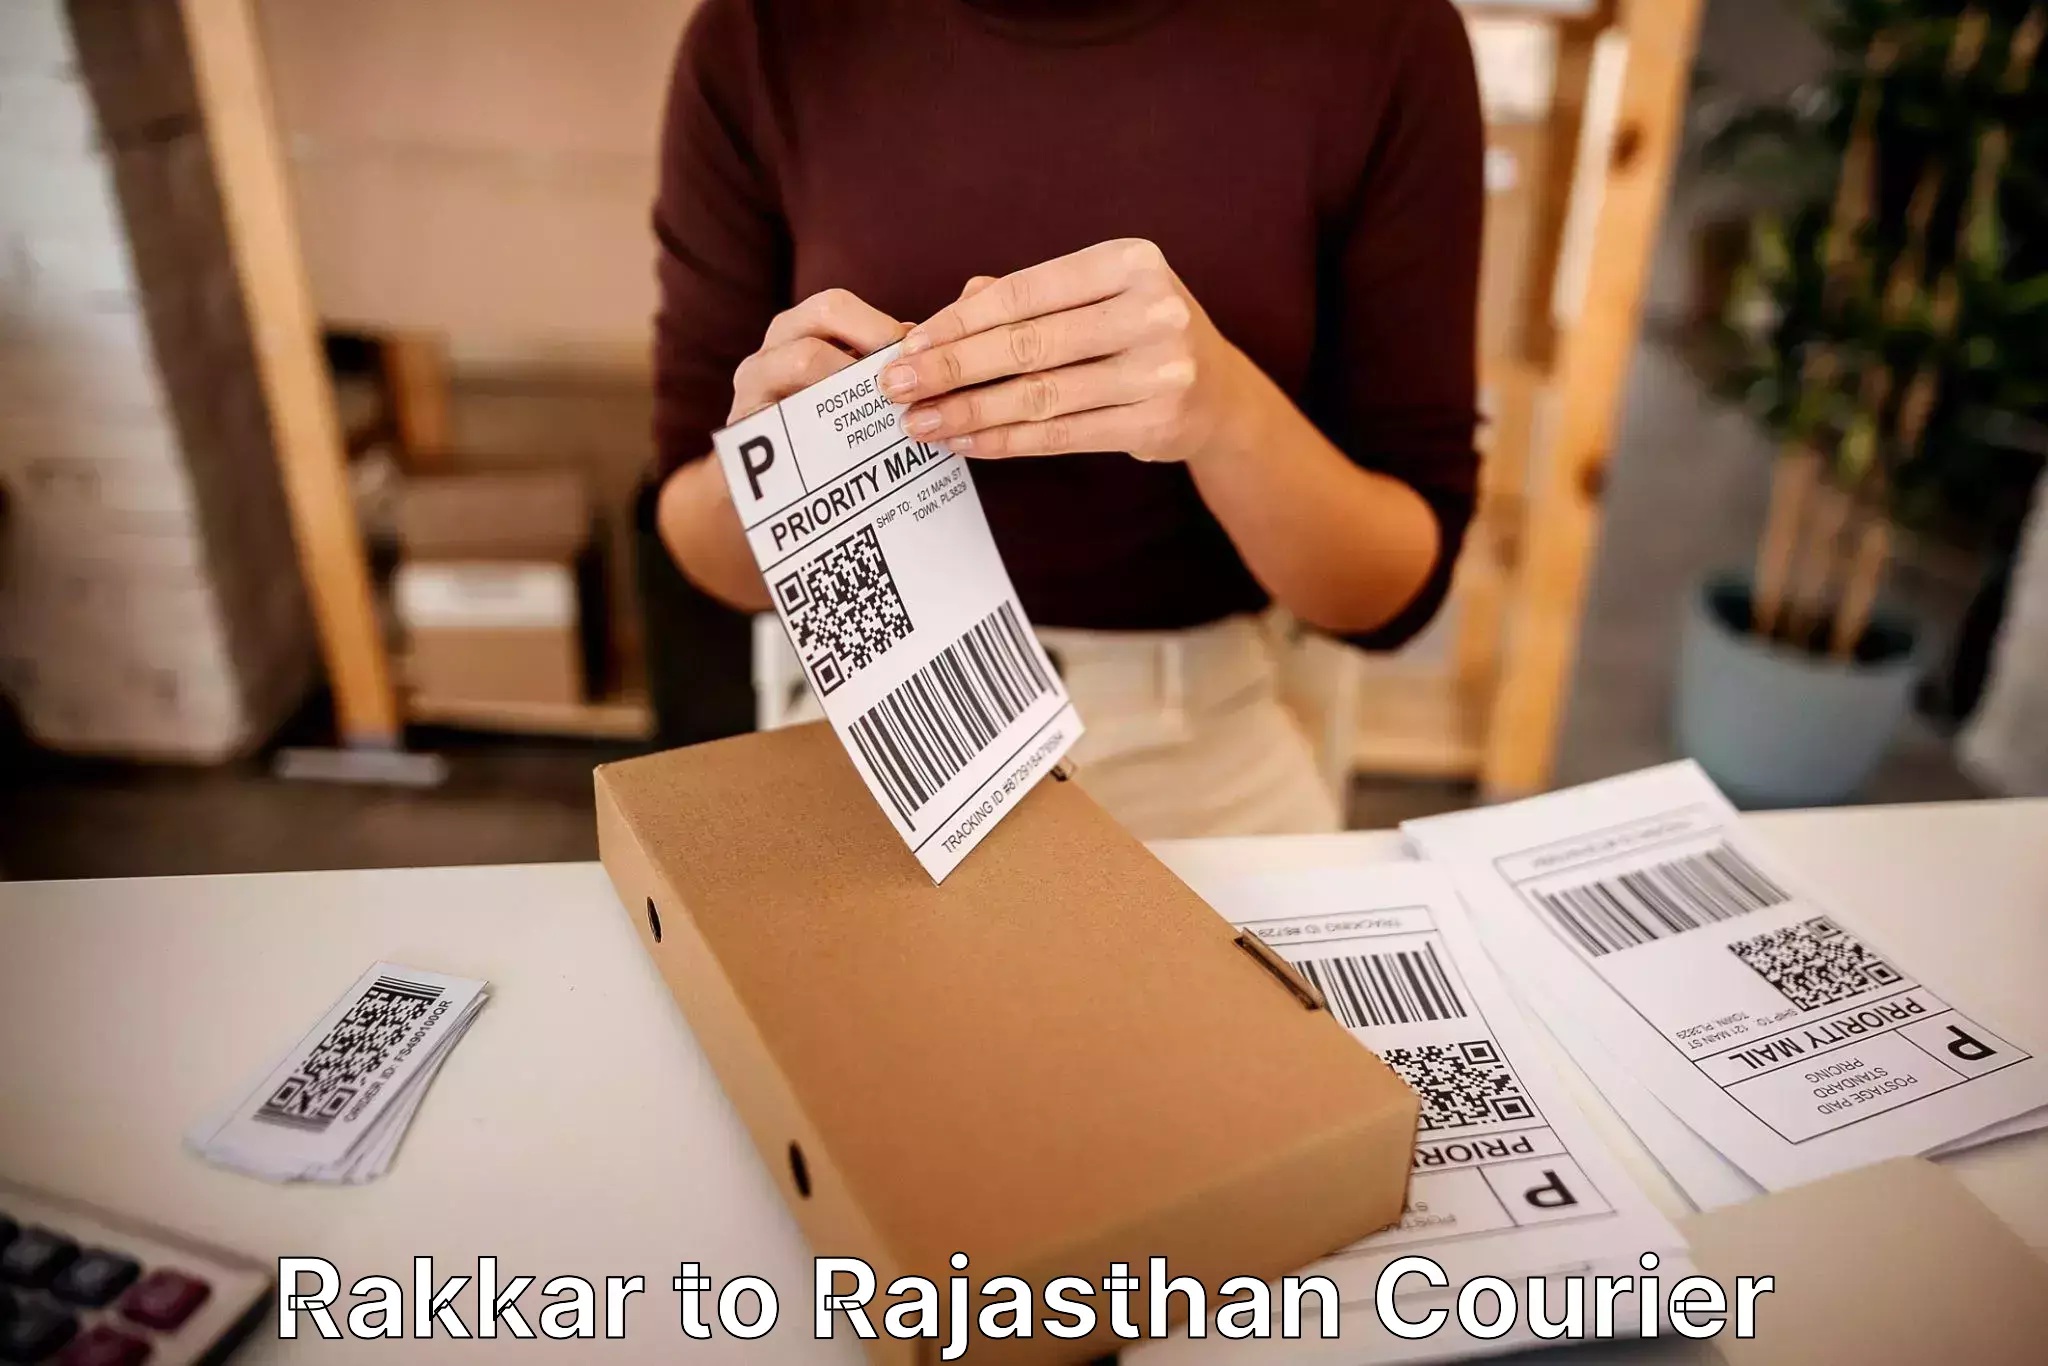 Furniture transport specialists Rakkar to Rajsamand